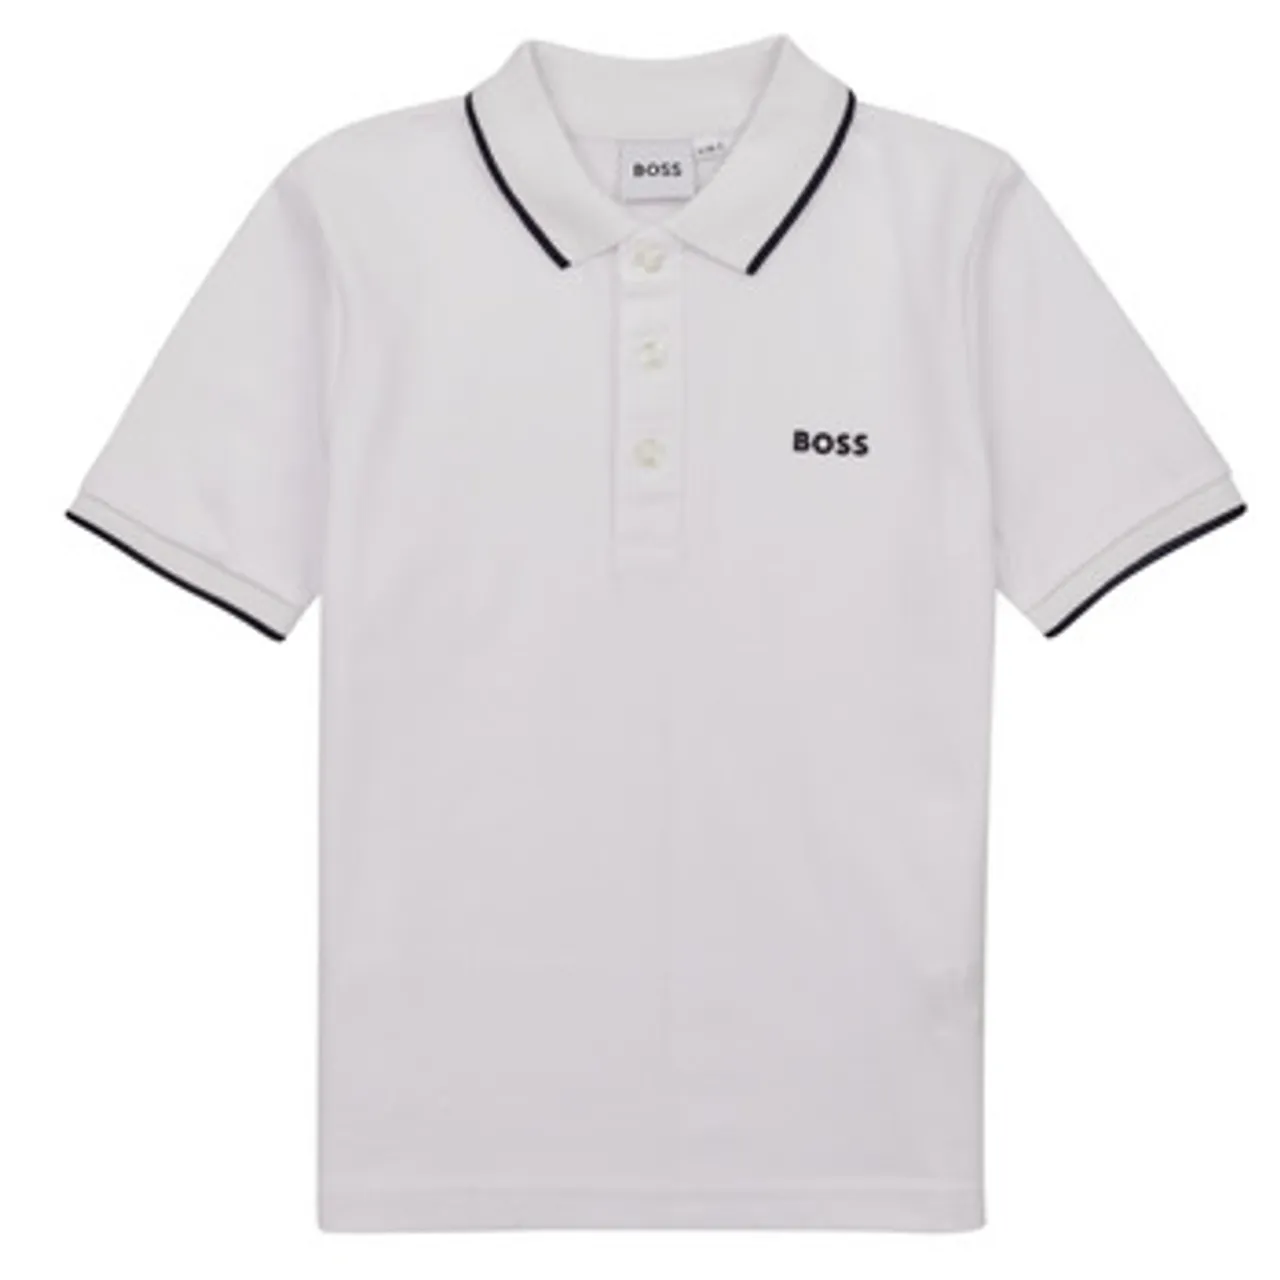 BOSS  J25P26-10P-C  boys's Children's polo shirt in White